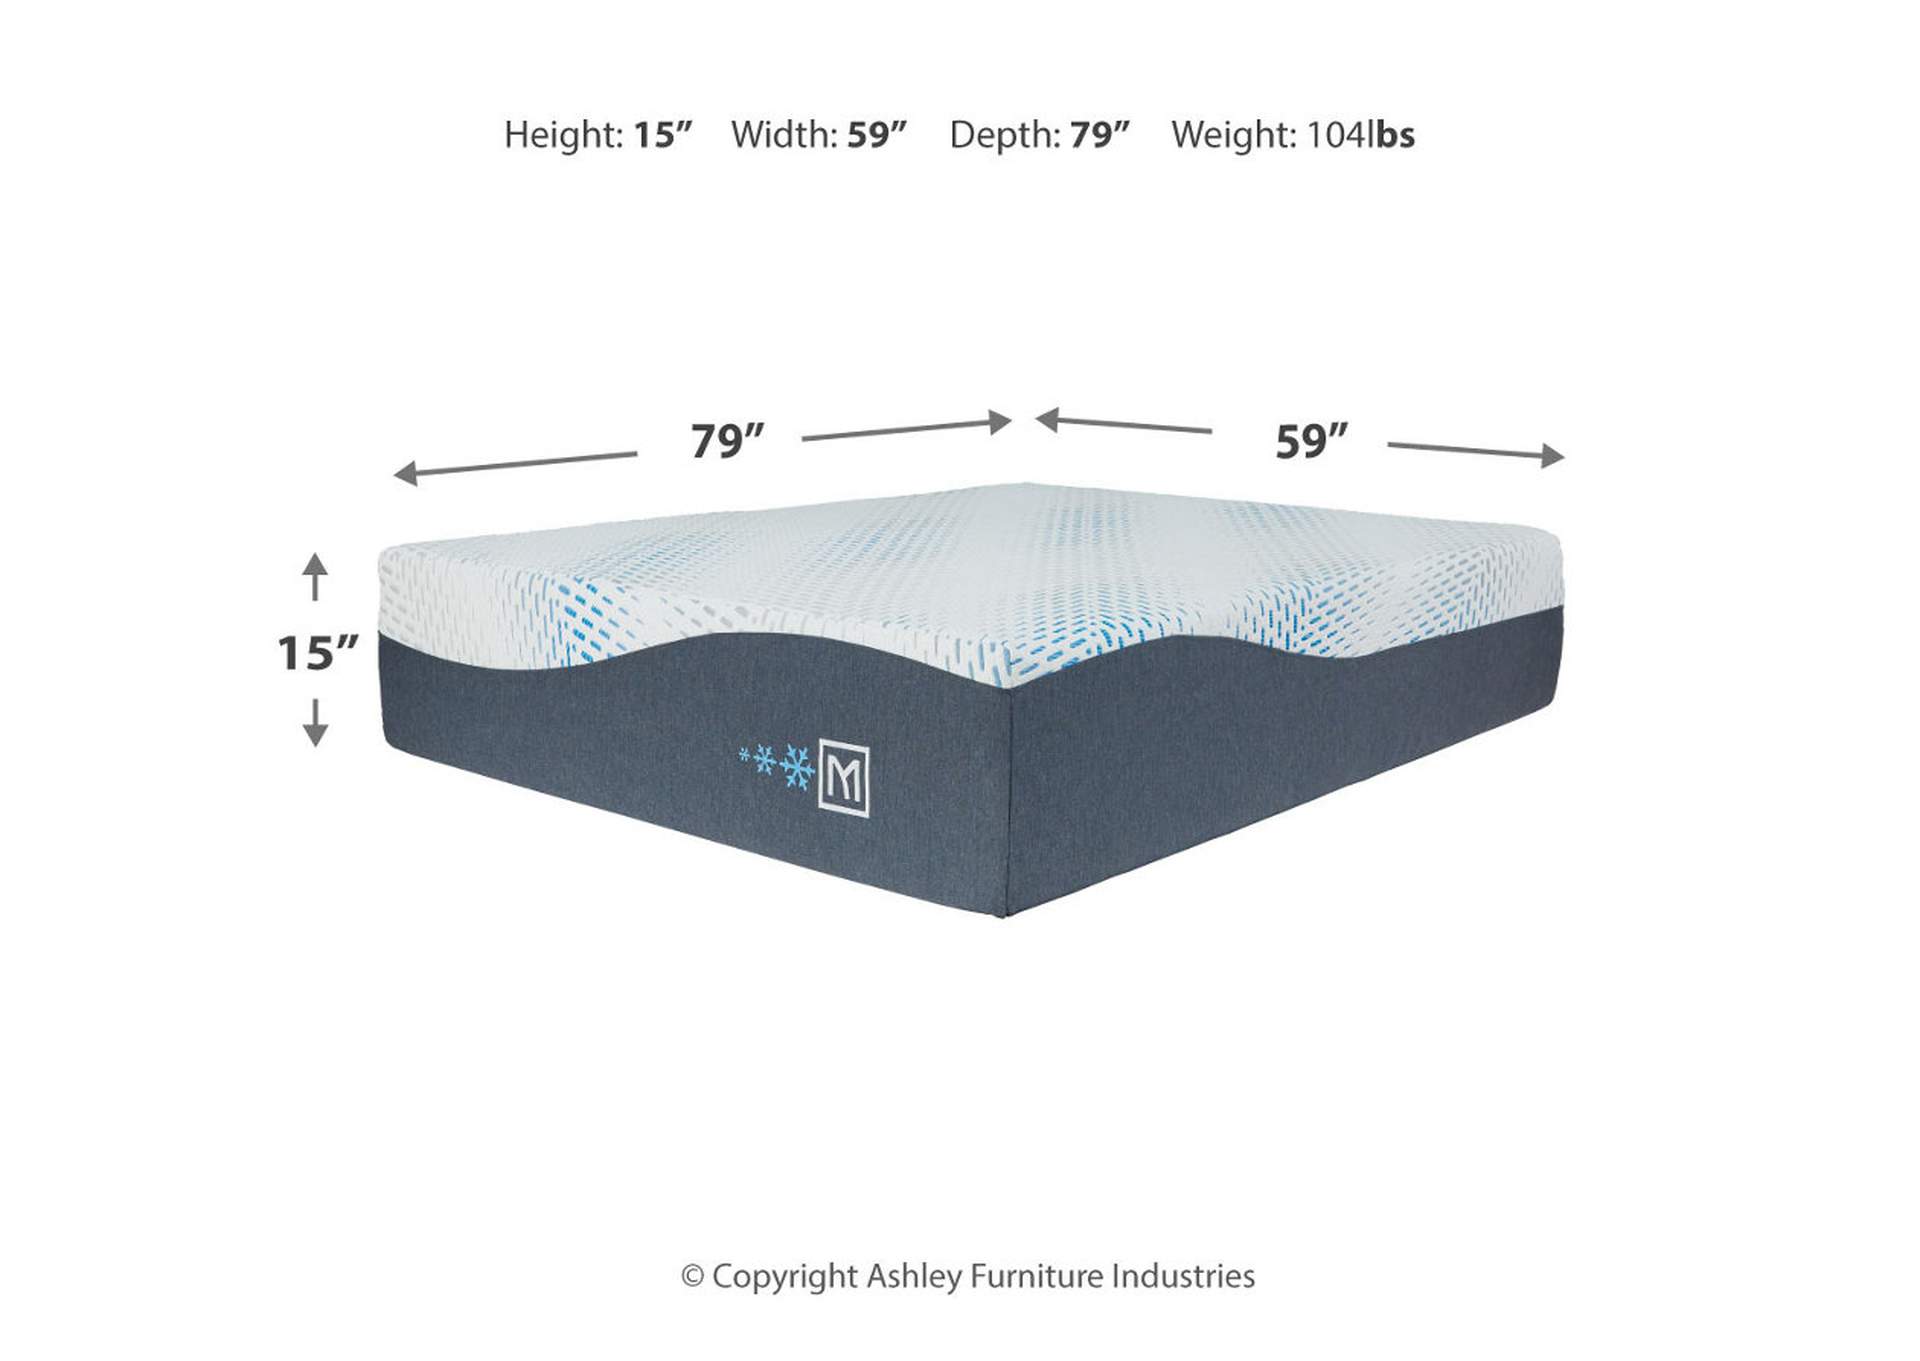 Millennium Luxury Plush Gel Latex Hybrid Mattress with Adjustable Base,Sierra Sleep by Ashley